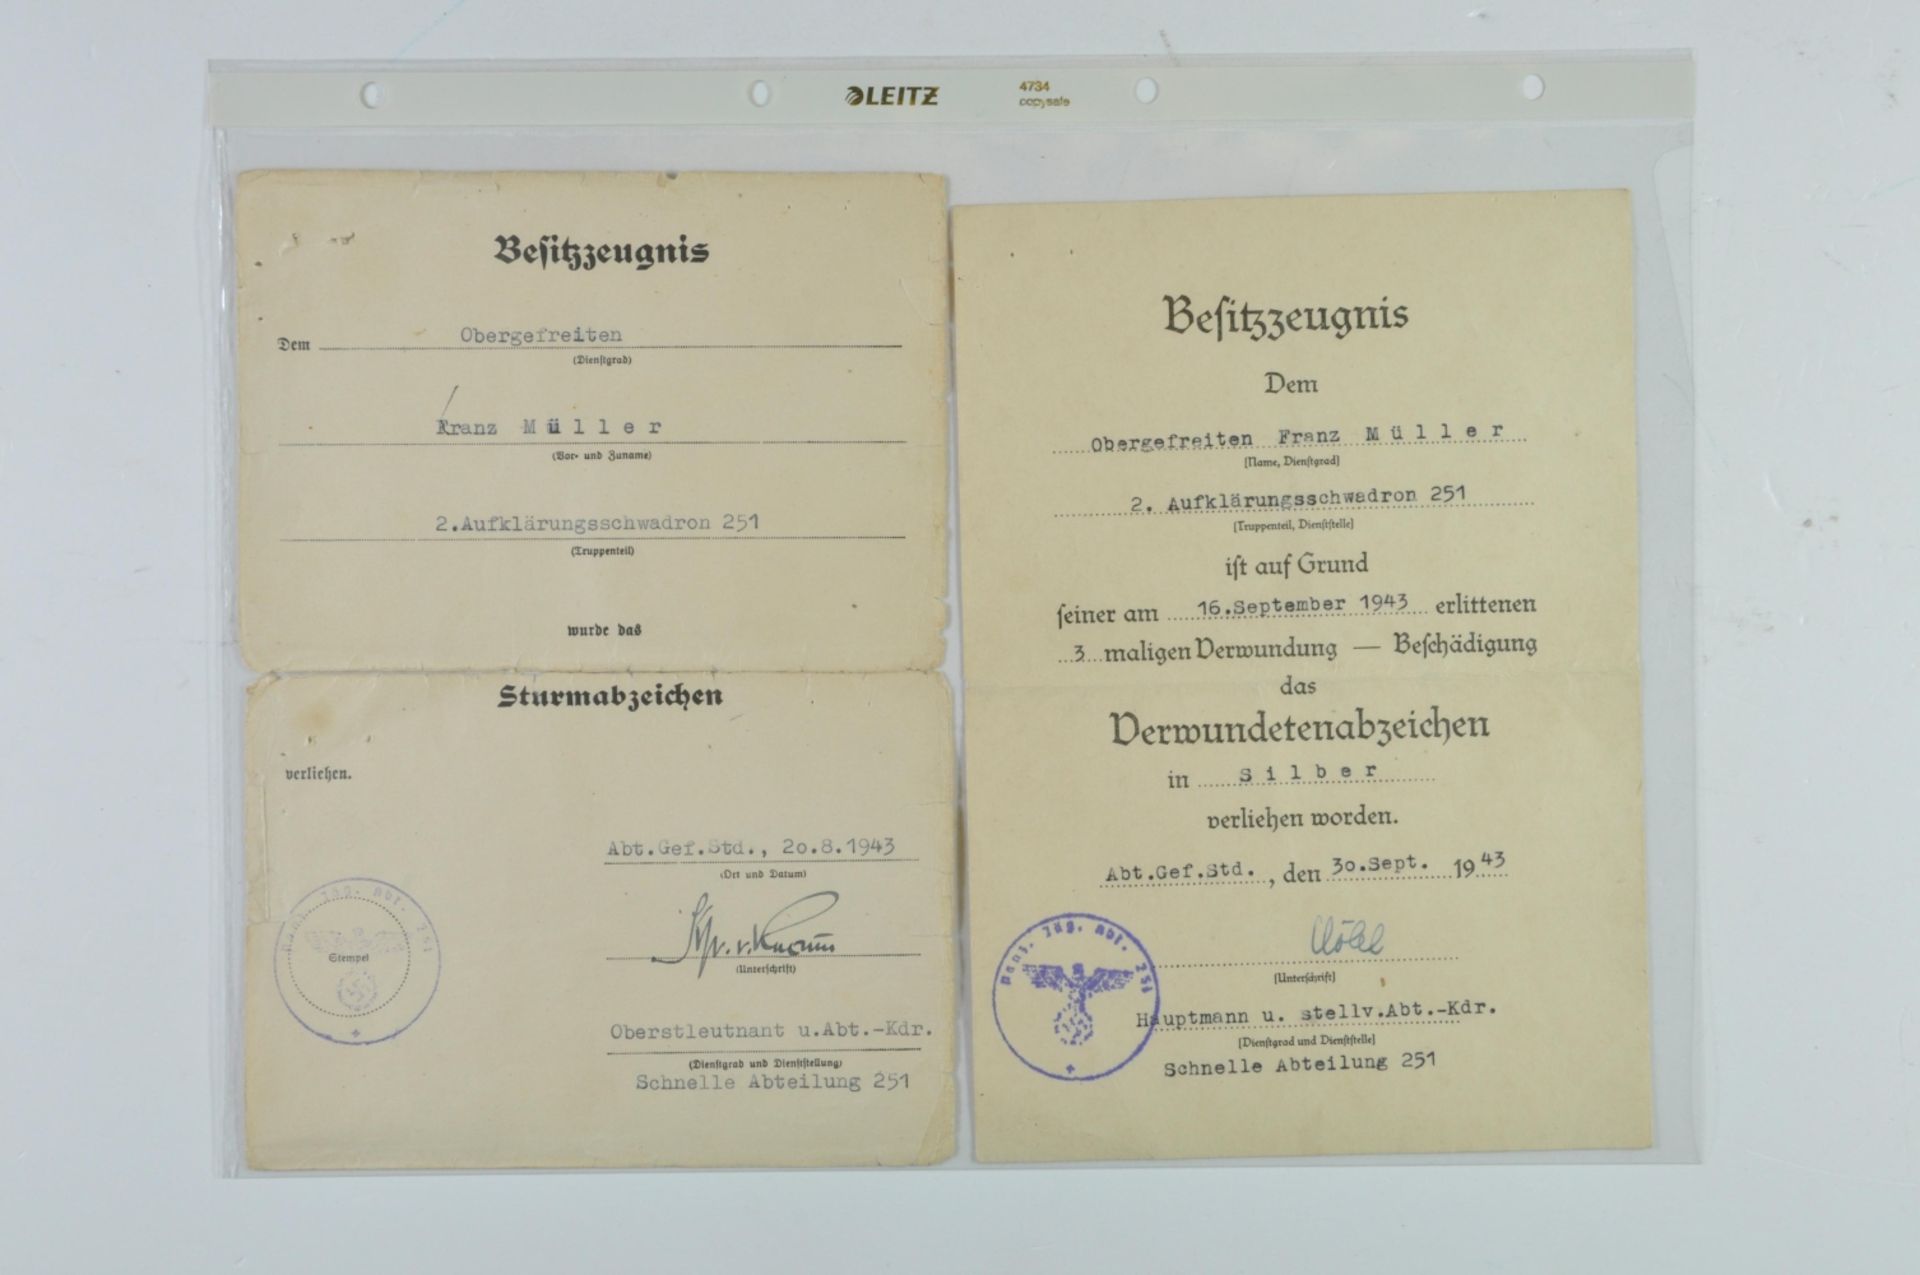 Urkunden-Nachlass eines Angehörigen des 2.Aufkl.Schw./Schnelle Abt. 251 mit Verleihungsurkunde Eiser - Bild 2 aus 4